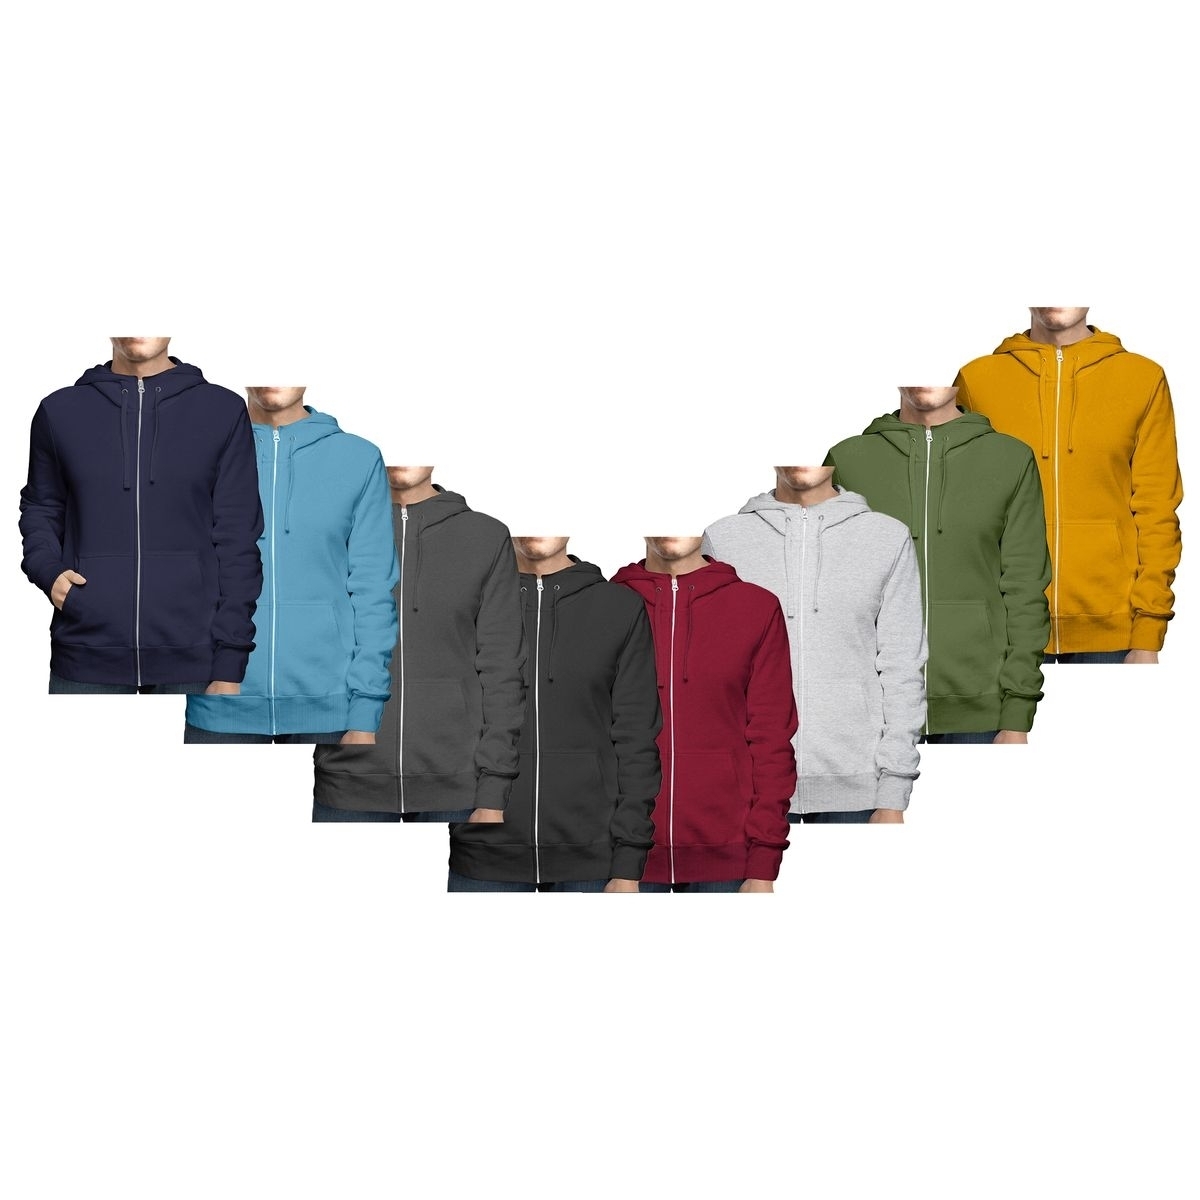 Men's Big & Tall Winter Warm Soft Cozy Full Zip-Up Fleece Lined Hoodie Sweatshirt - Black, Medium